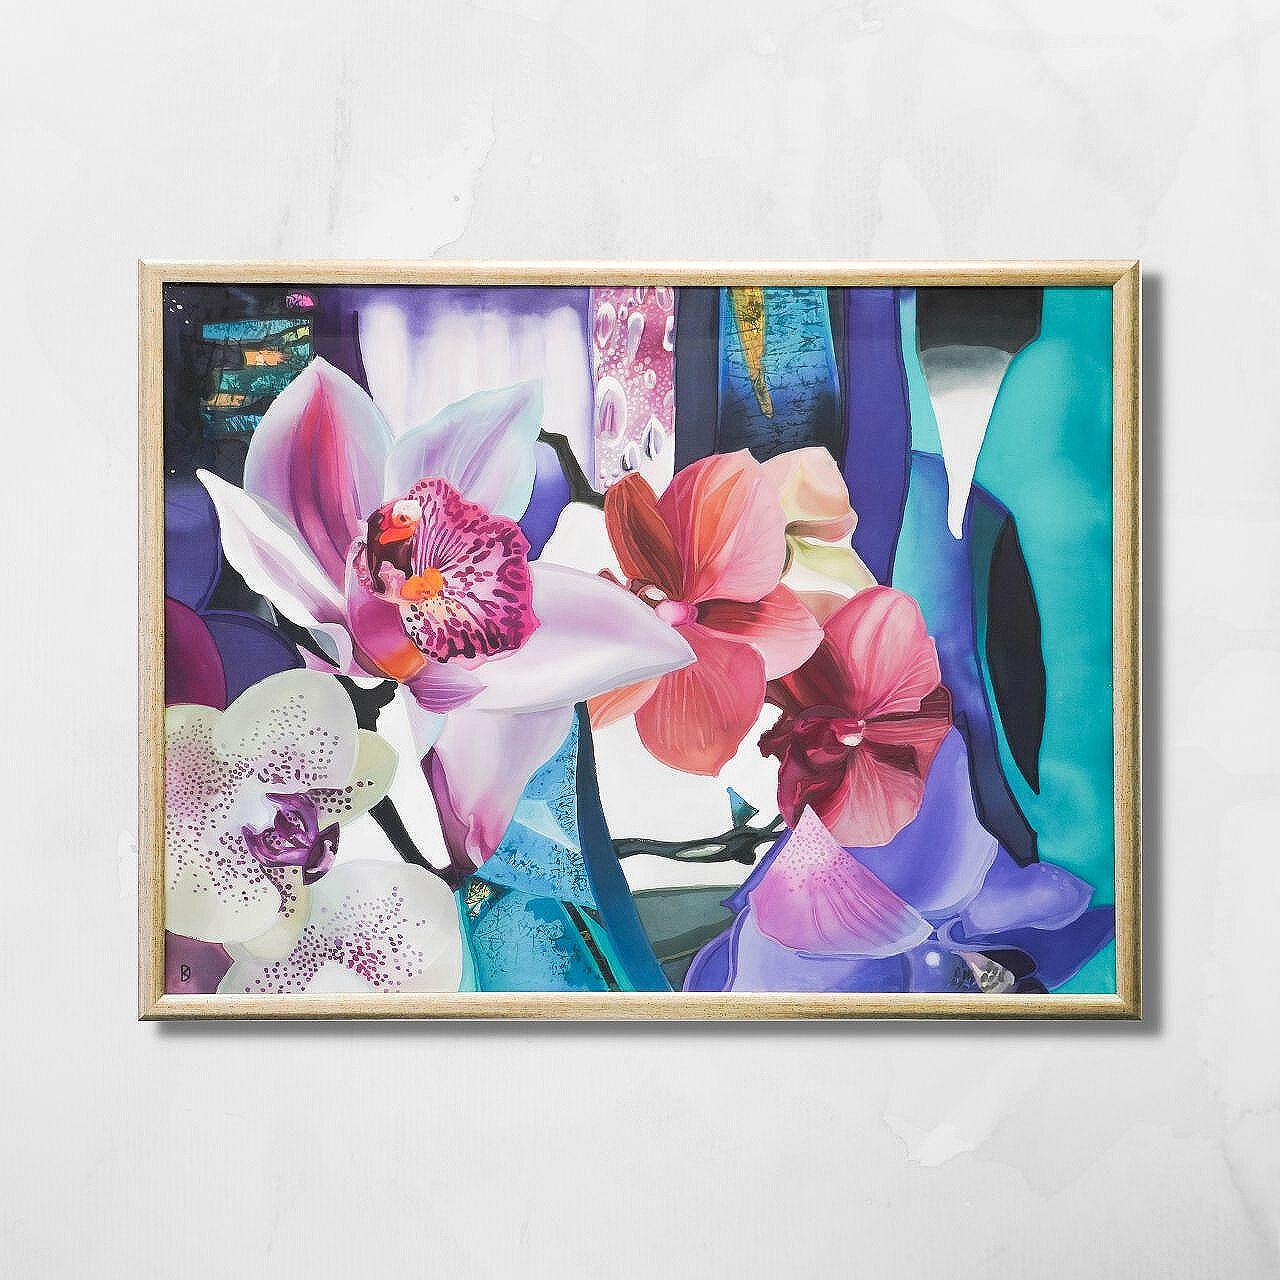 Картина "Орхидеи" | Данелина Косева